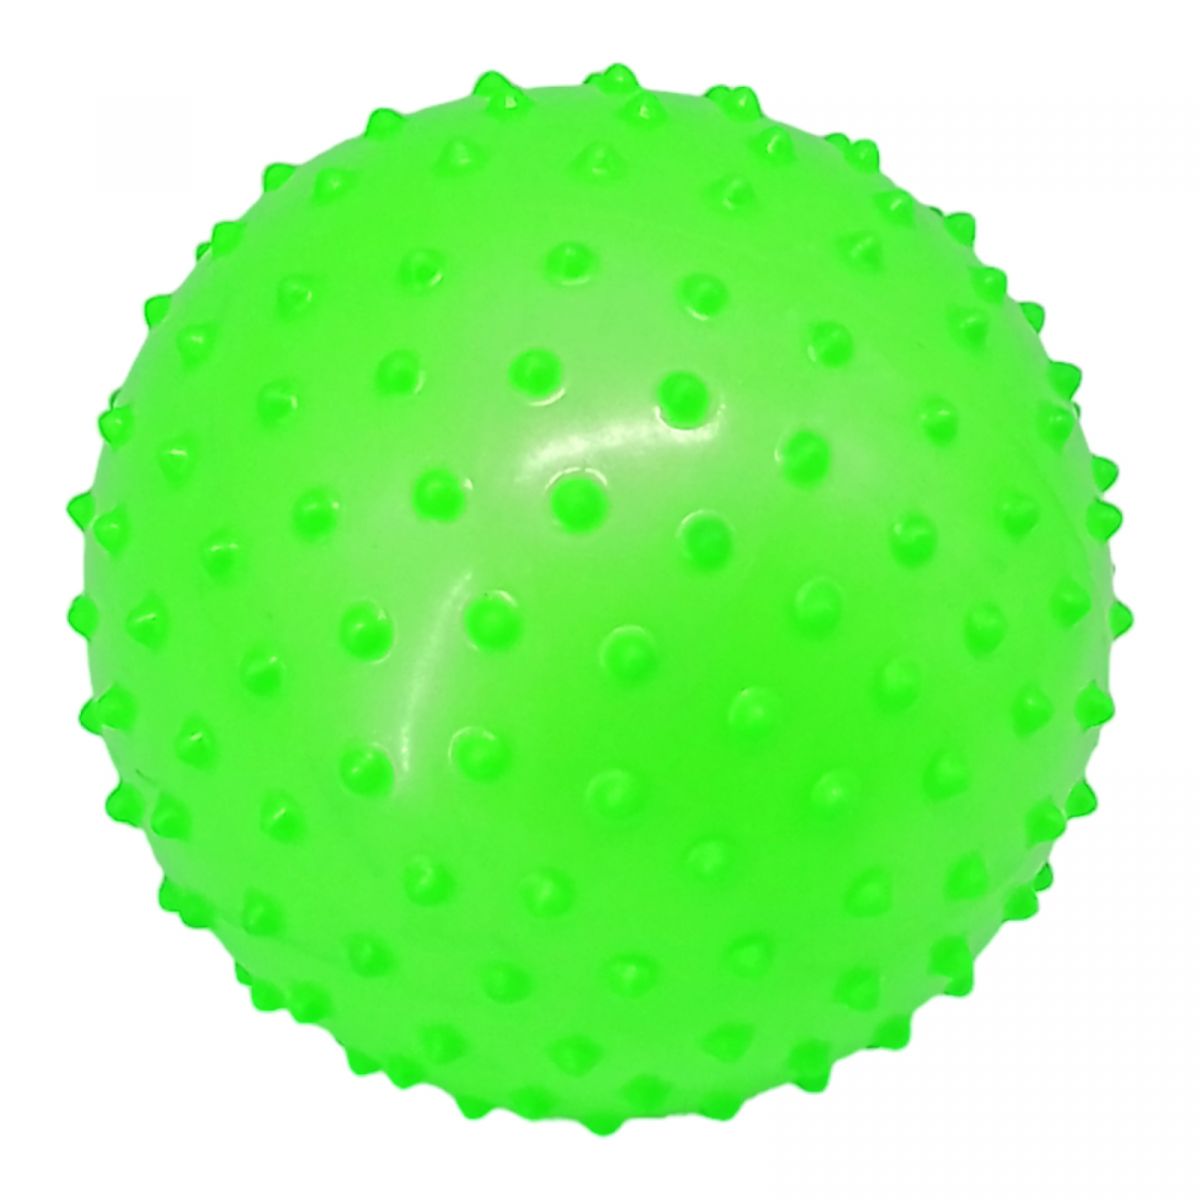 Резиновый мяч массажный, 16 см (зеленый)